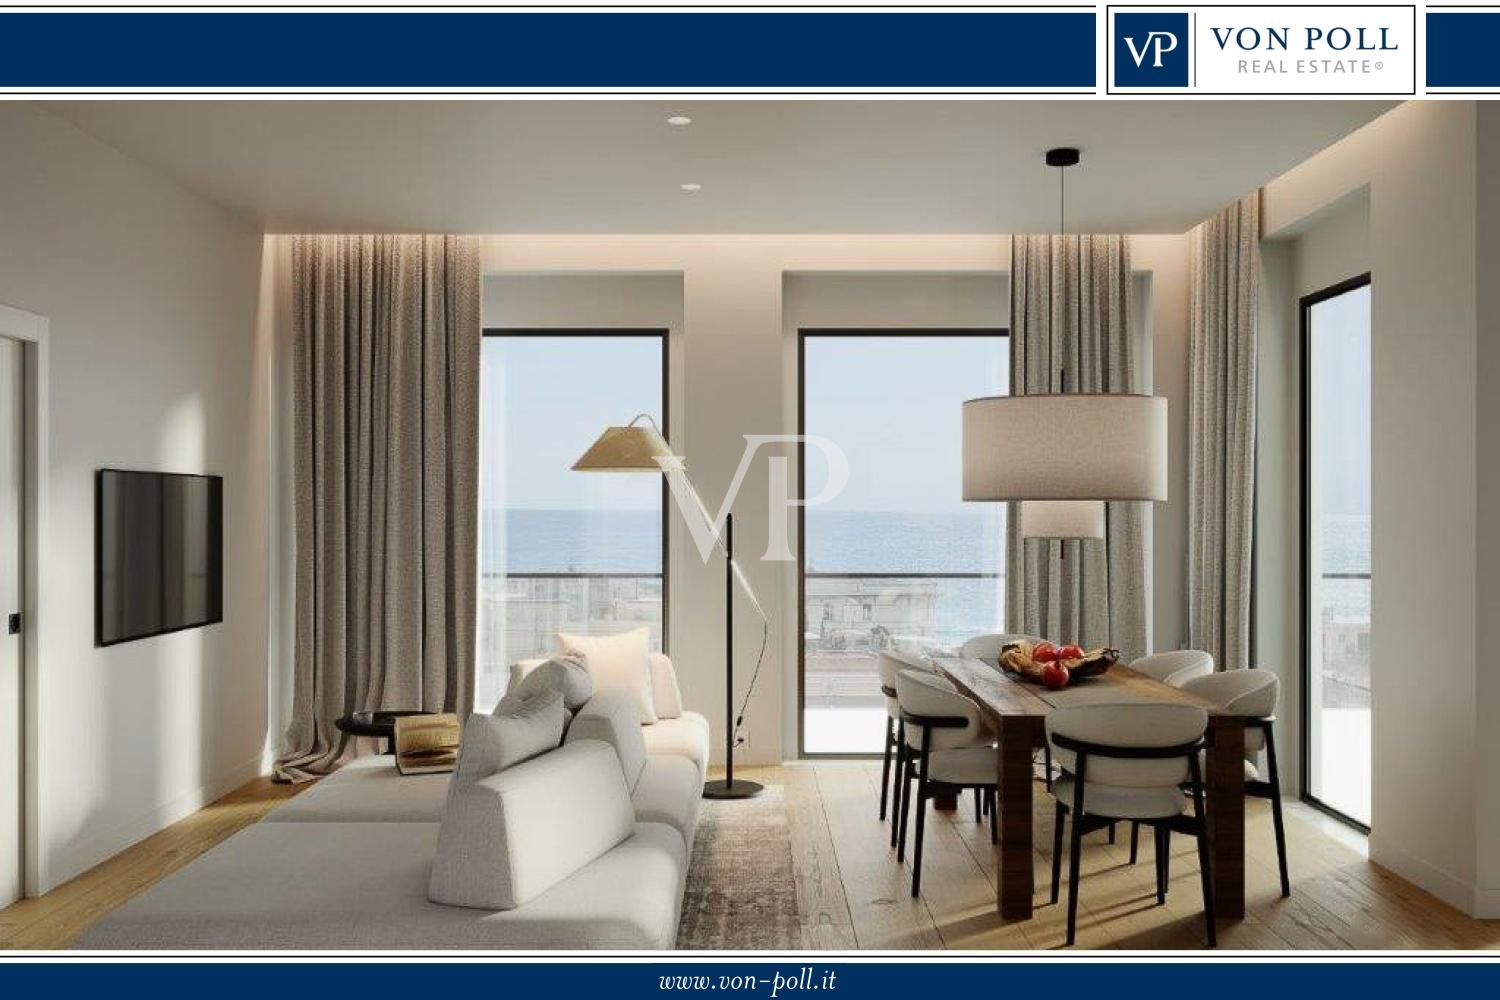 Villa Bonita - 4 unidades residenciales de alta calidad disponibles